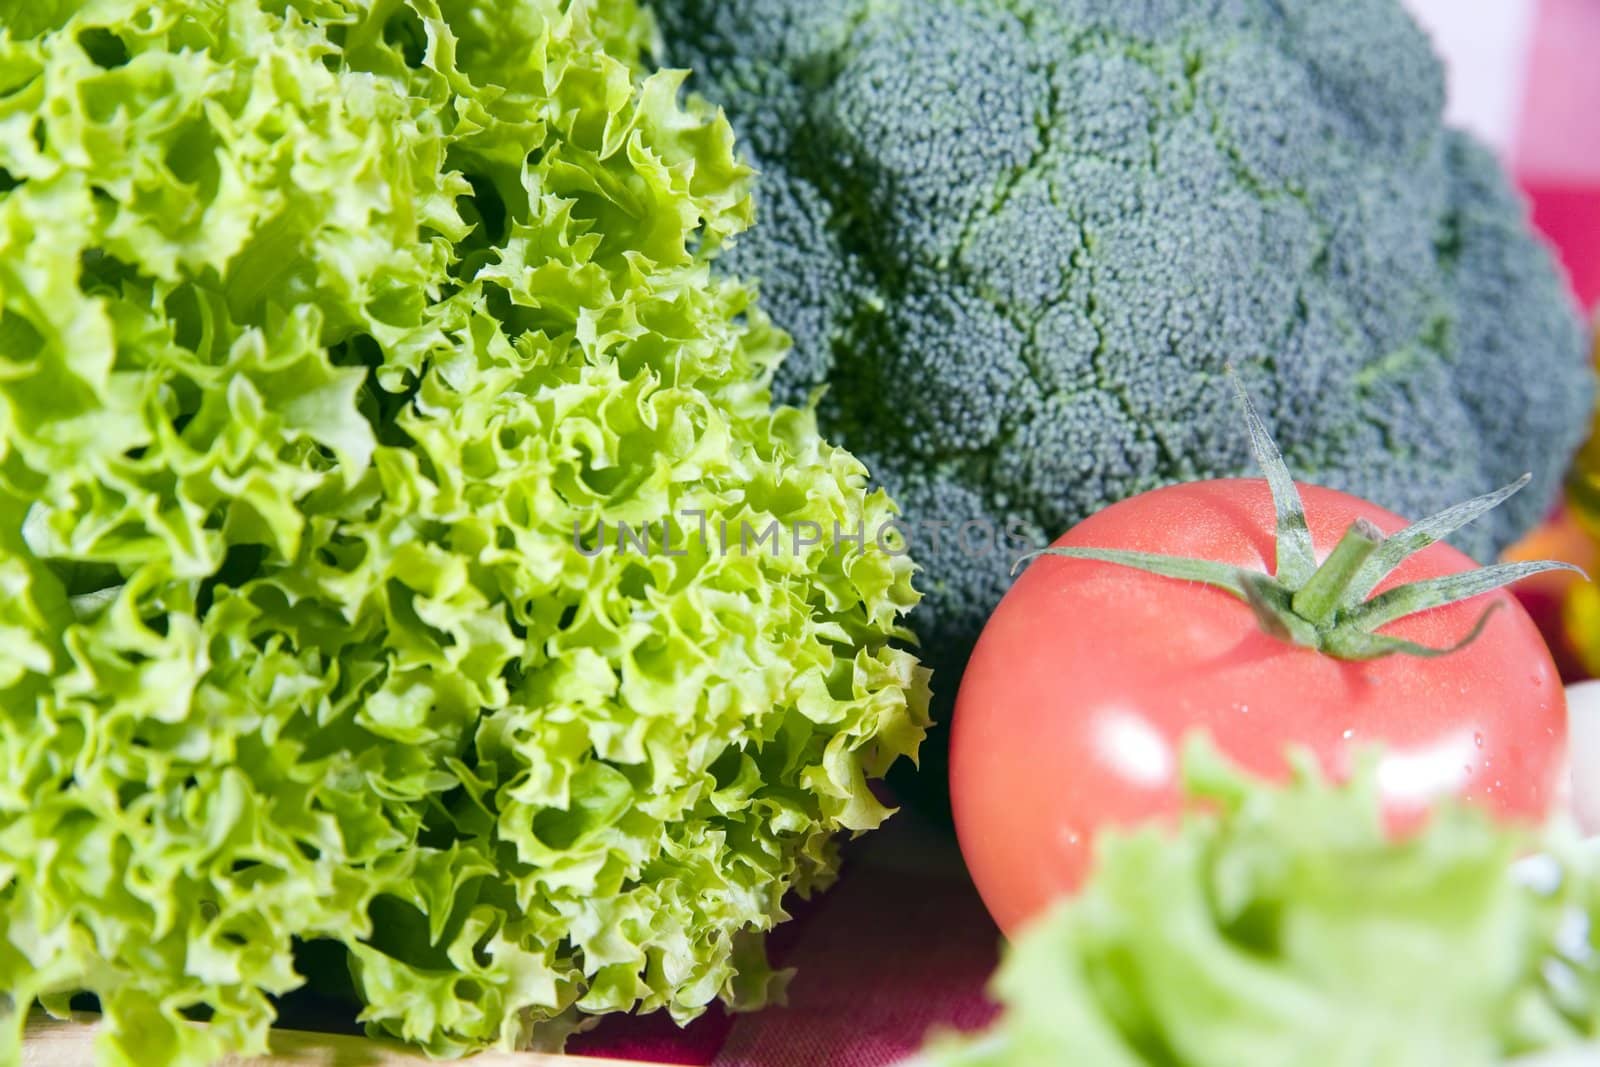 lettuce, broccoli and tomato - hi res 12,7 mpix